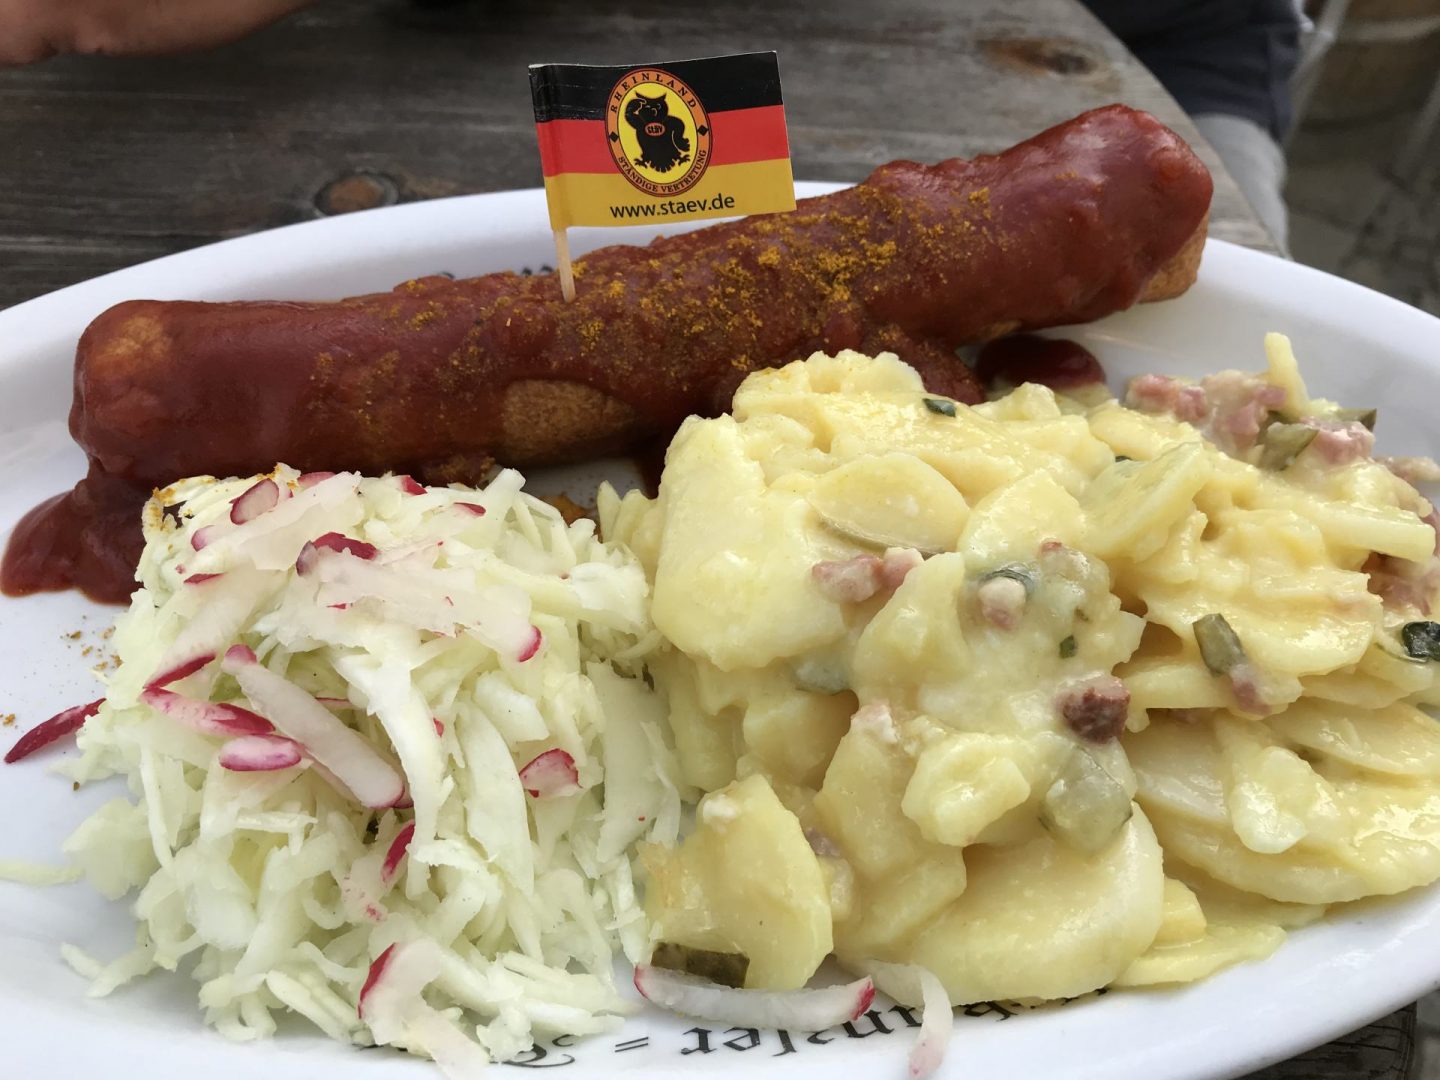 Erfahrung Bewertung Kritik Ständige Vertretung Berlin Currywurst mit Kartoffelsalat Foodblog Sternestulle